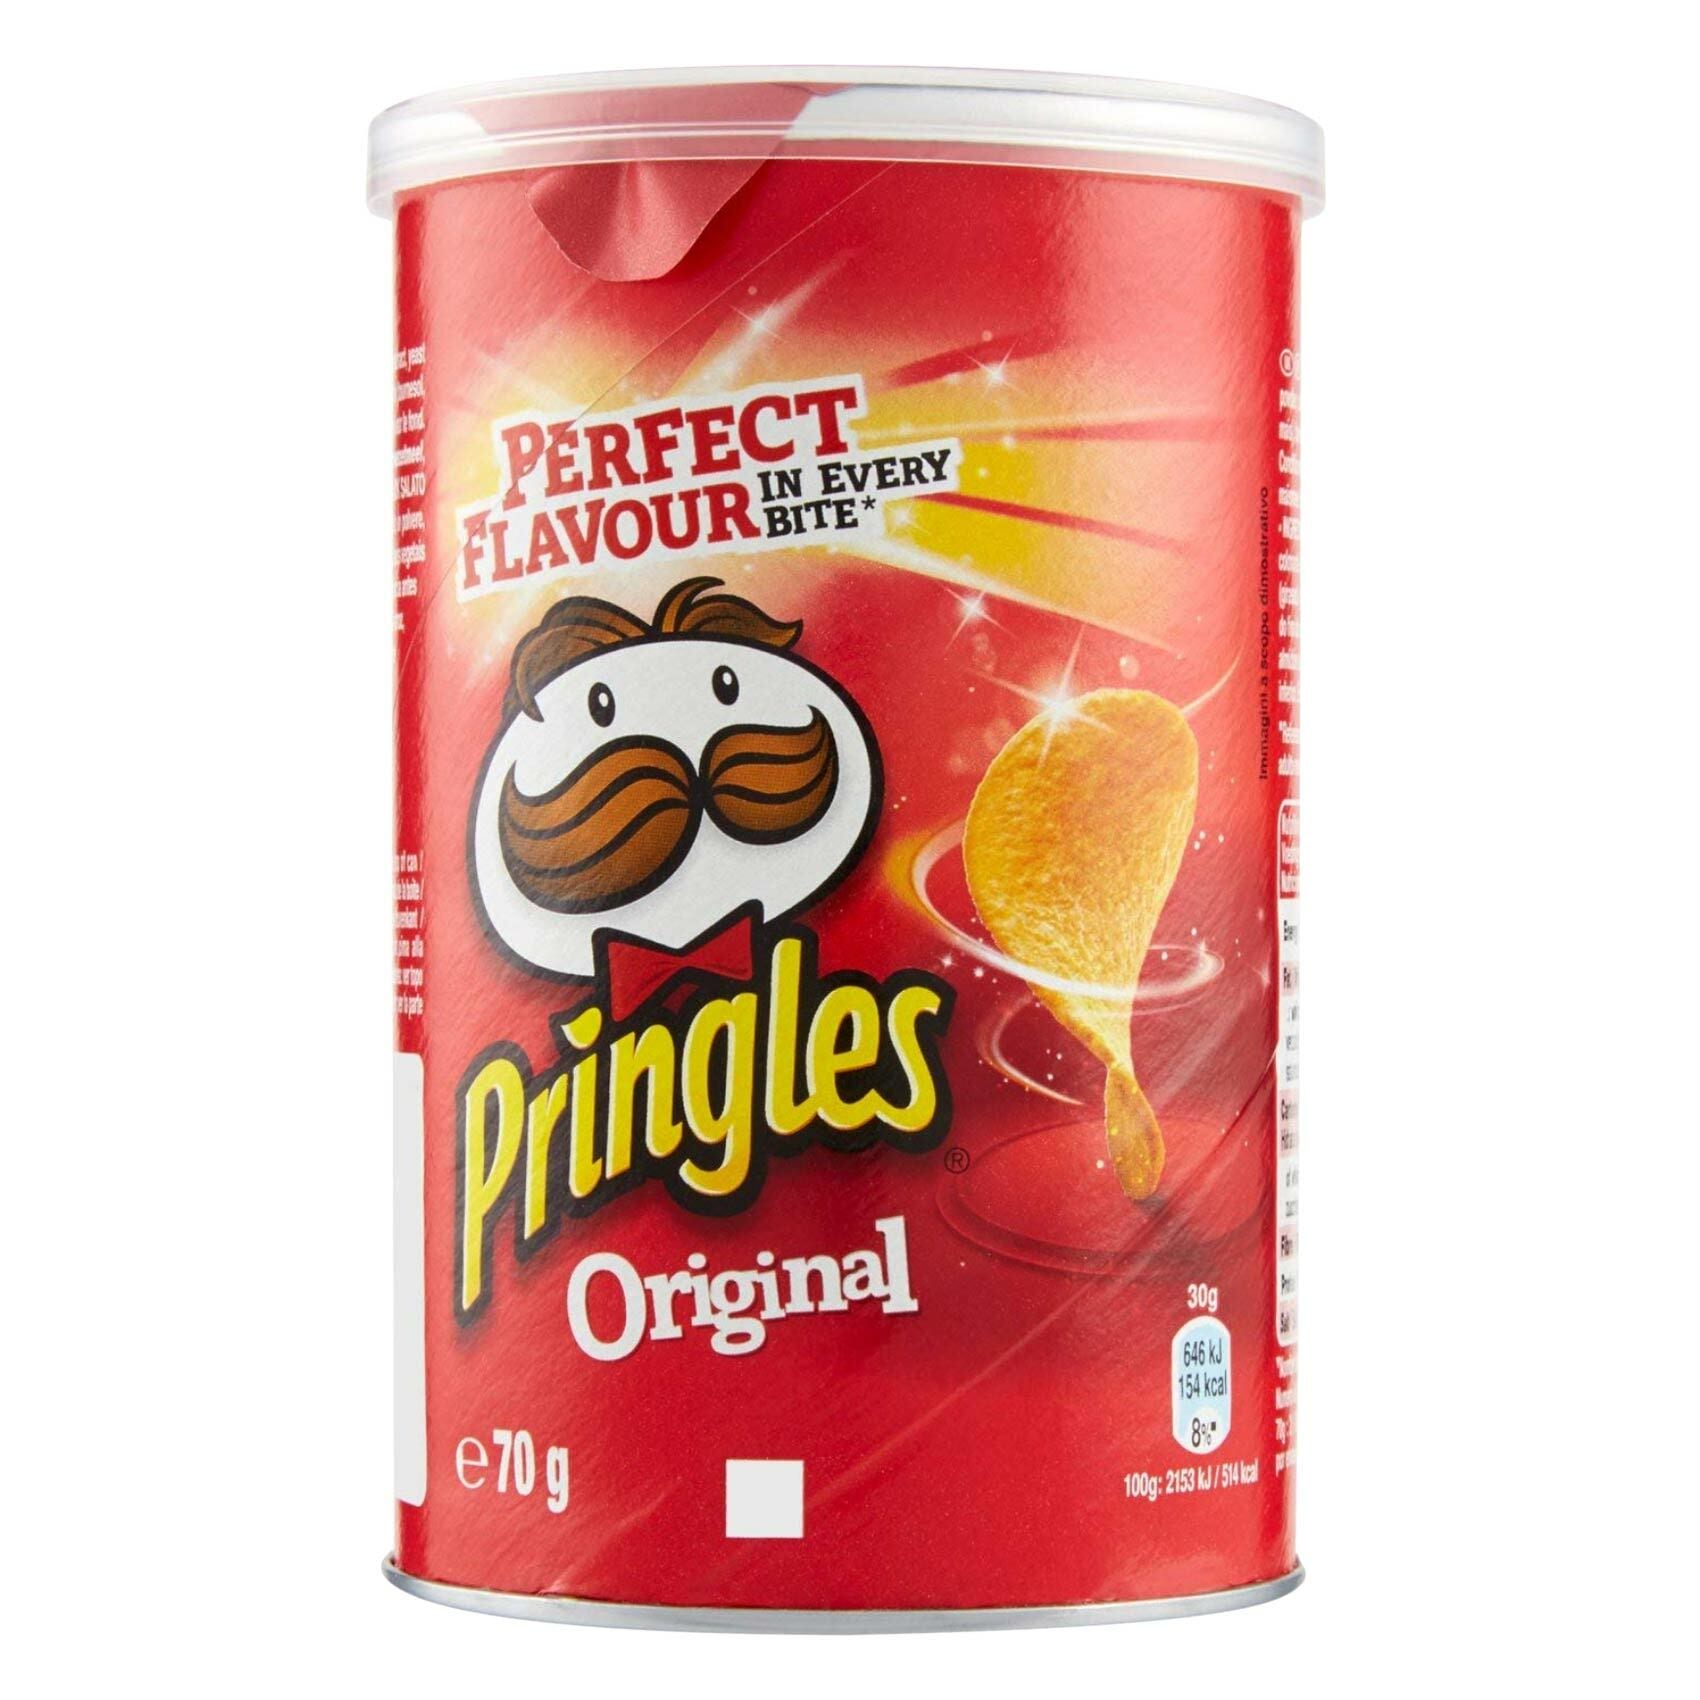 Buy Pringles Original Snacks 70g Online - Shop Food Cupboard on ...